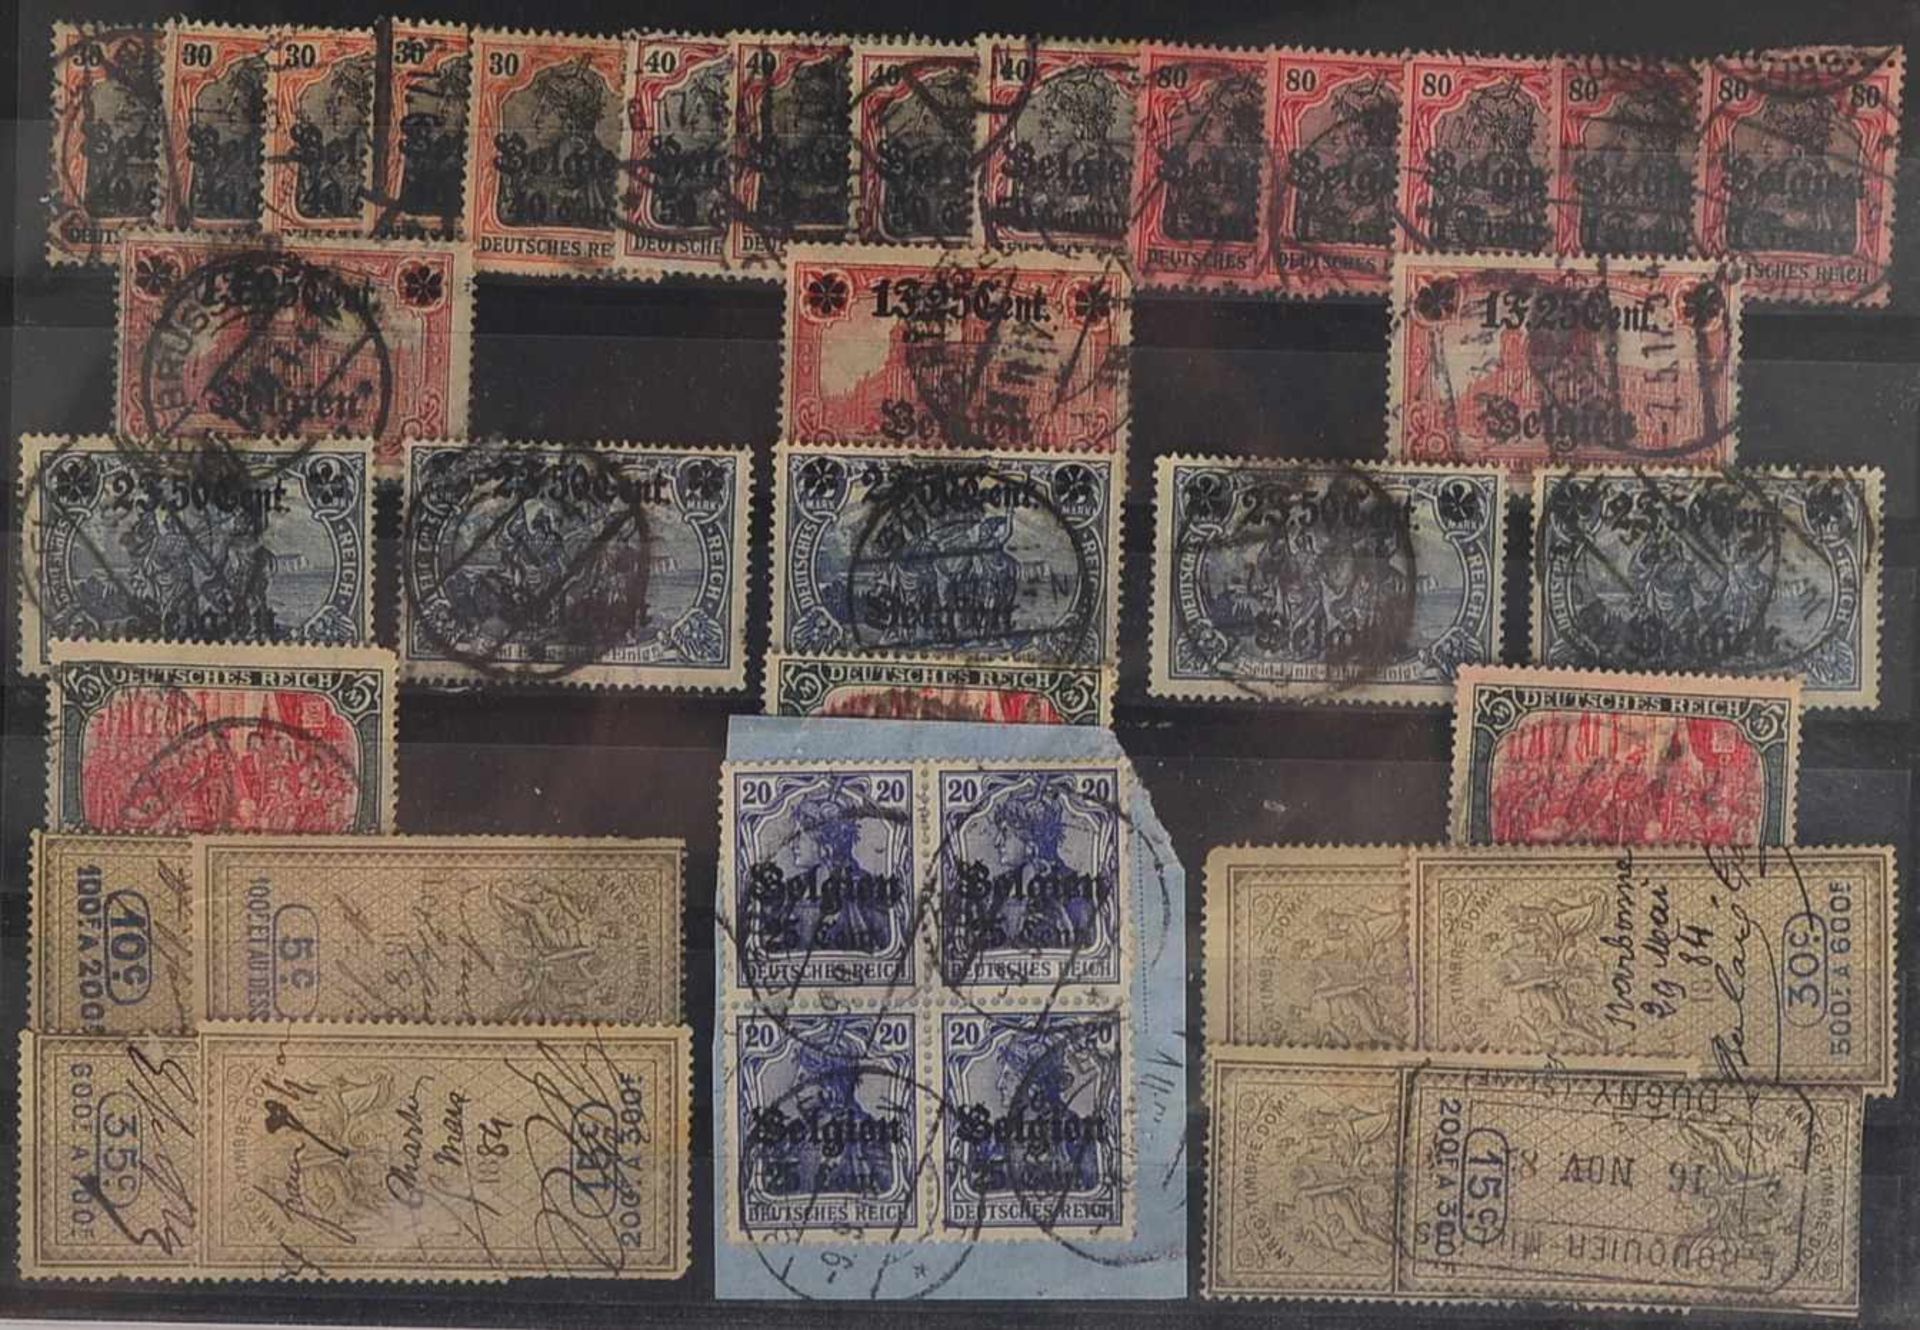 Briefmarken, 1871 - ca. 1956: 'Deutsches Reich' ab 'Brustschilde' bis hin zu den Nachkriegsausgaben, - Bild 2 aus 4